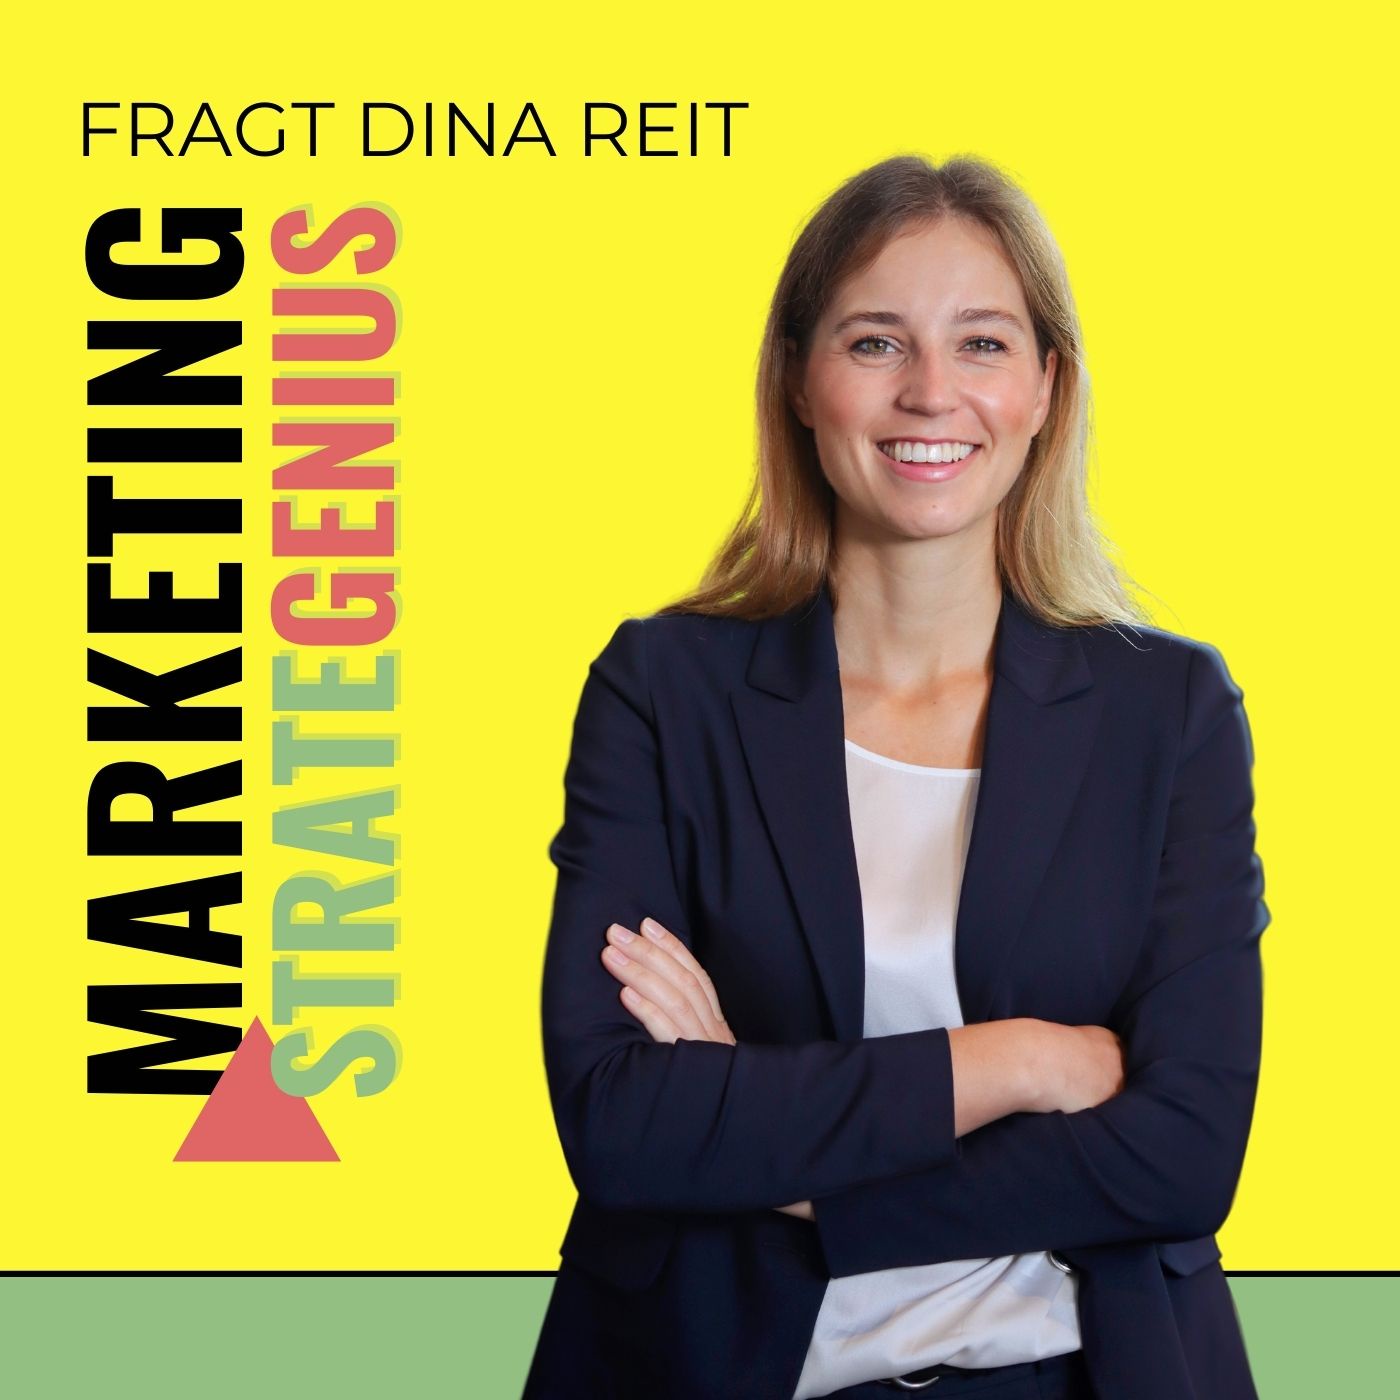 #4 Wie kann ein traditionelles Industrieunternehmen Marketing neu denken, Dina Reit?